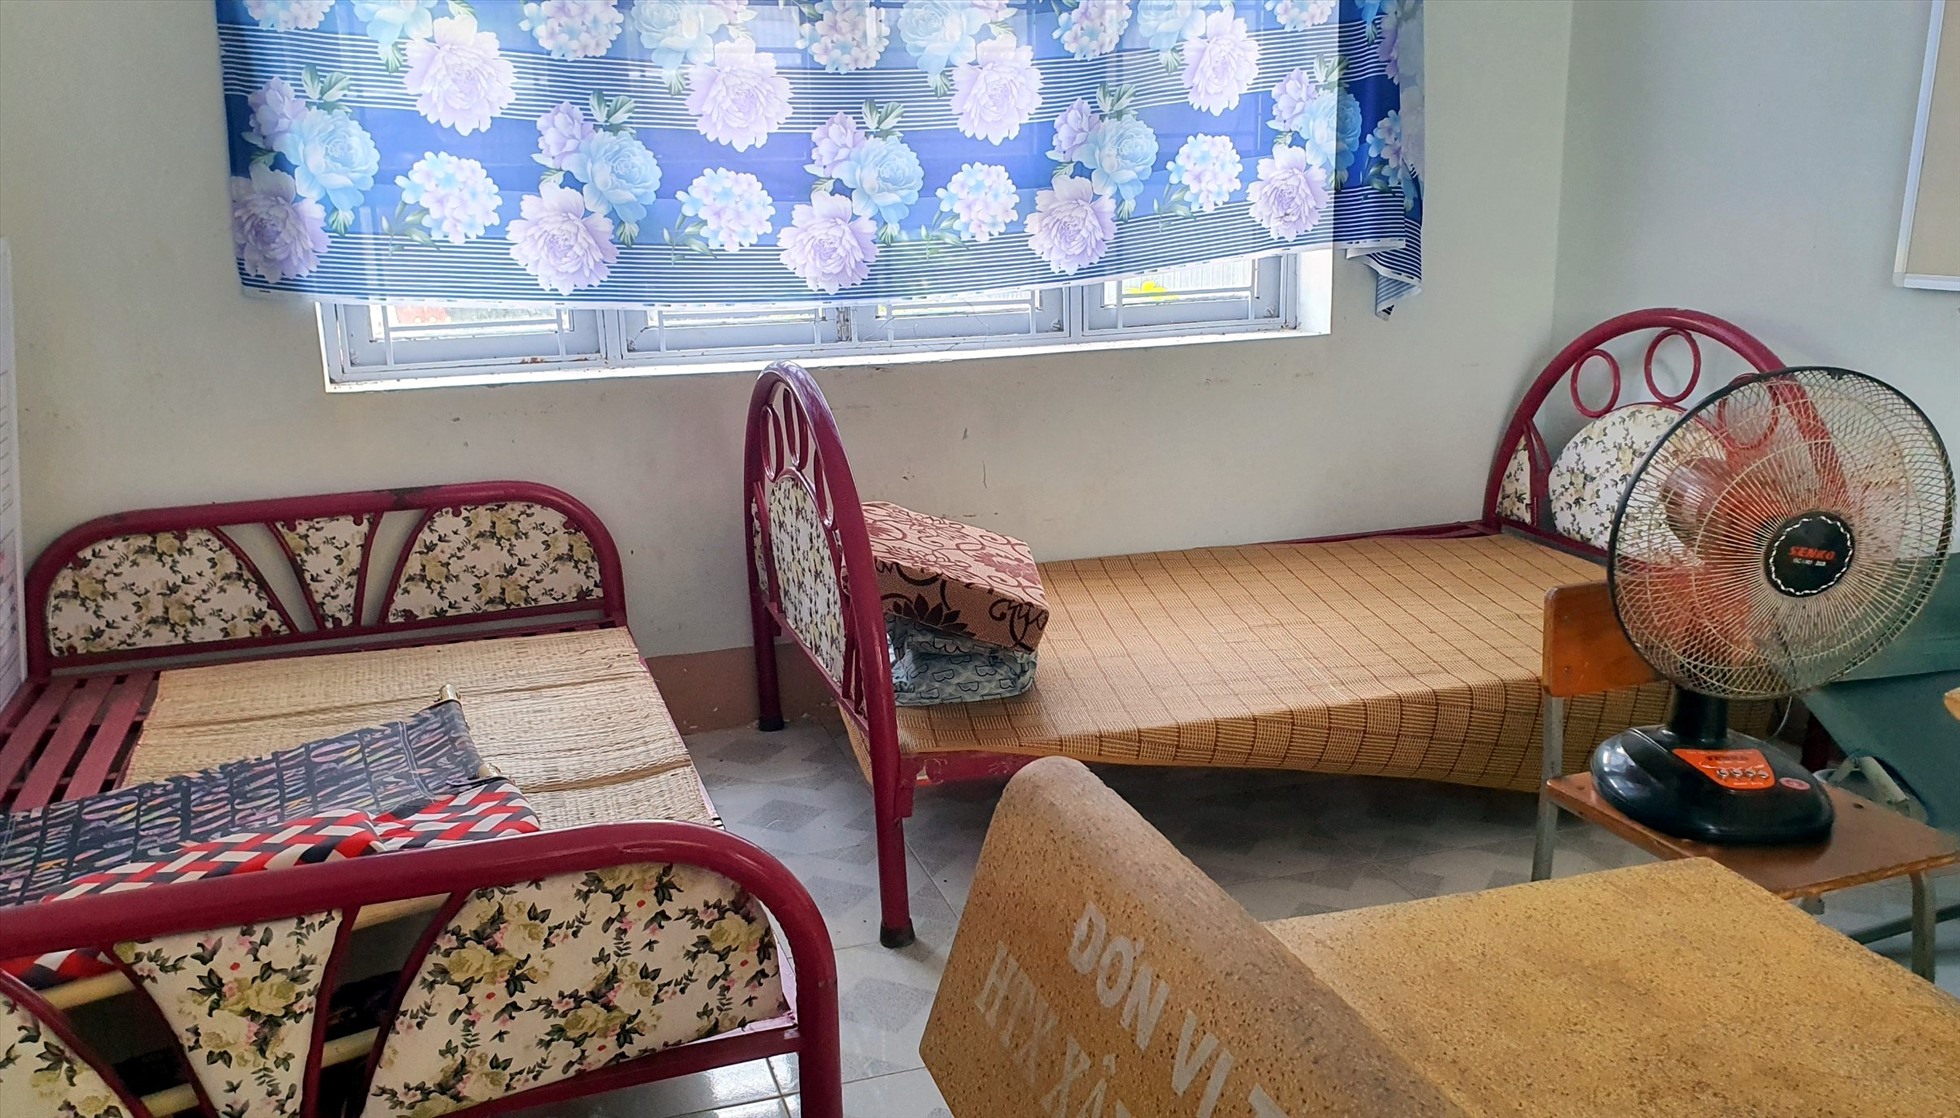 Trường tận dụng phòng trống làm nơi nghỉ ngơi cho giáo viên nhưng không thể đáp ứng nhu cầu cho 18 người có nhu cầu. Ảnh: Nhật Hồ